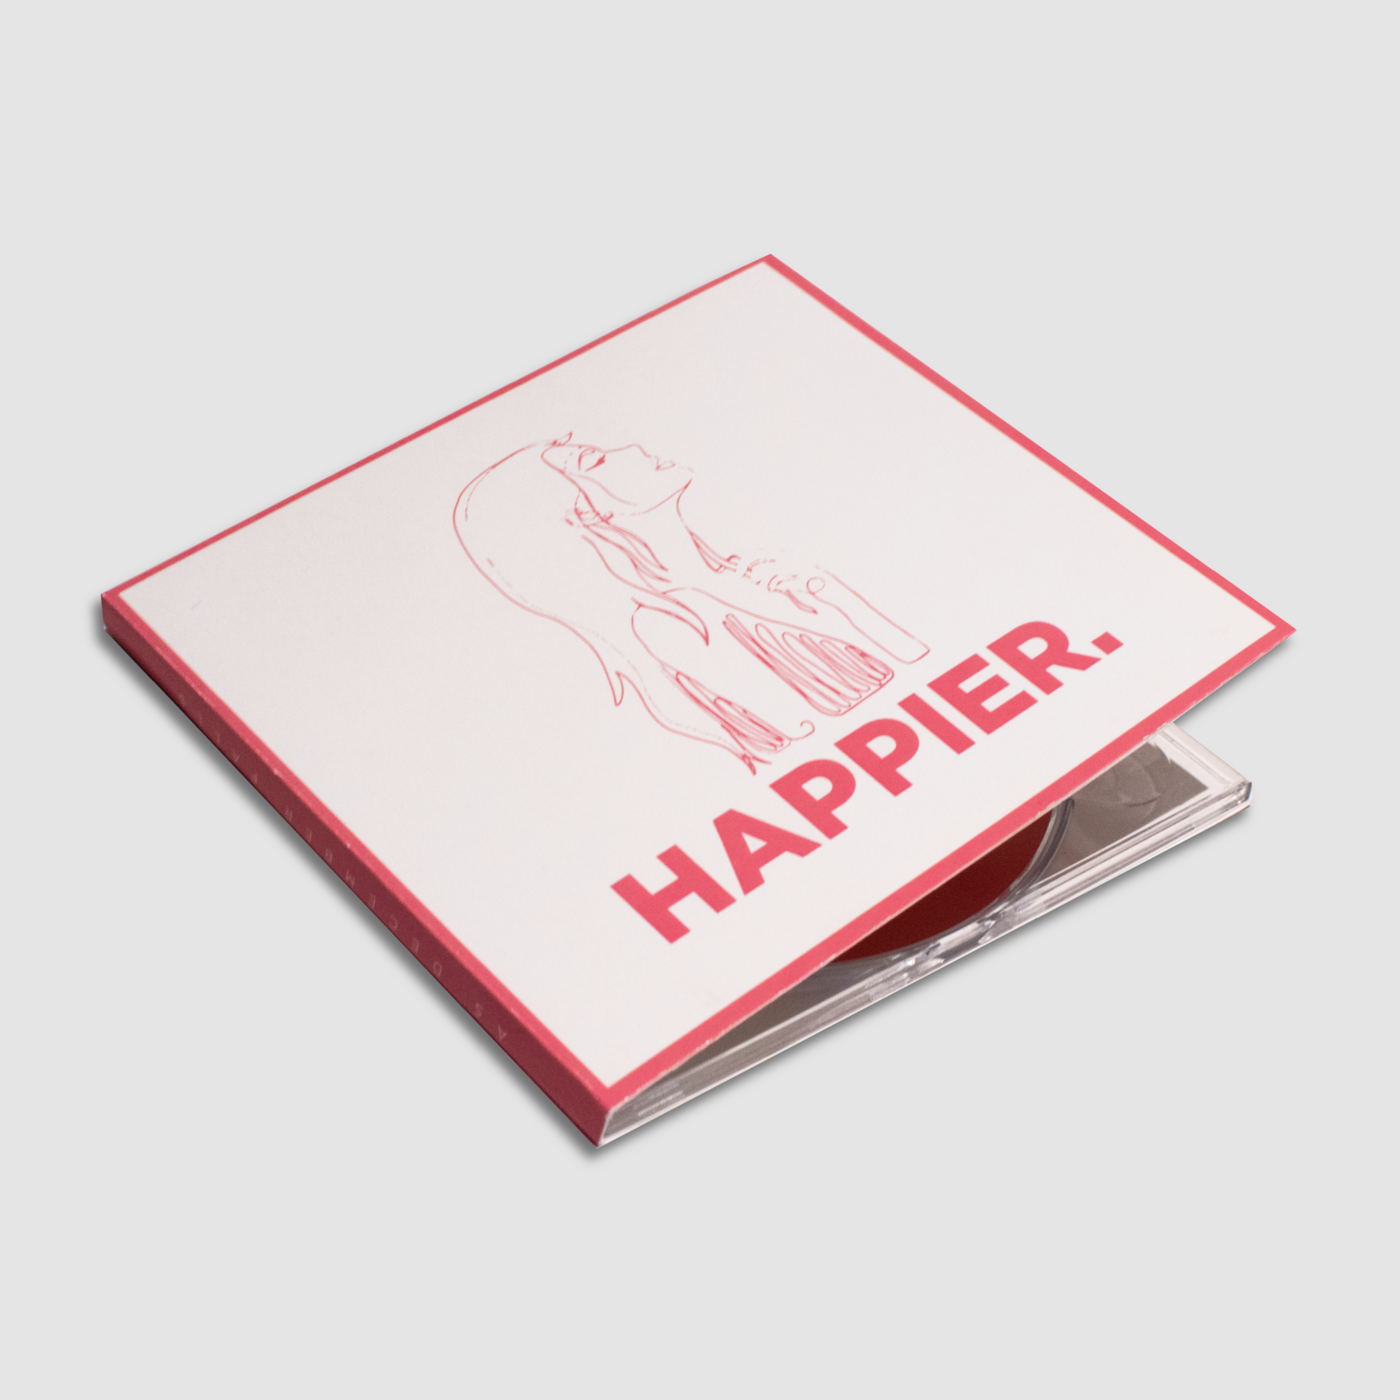 Happier. - Deluxe CD - EU